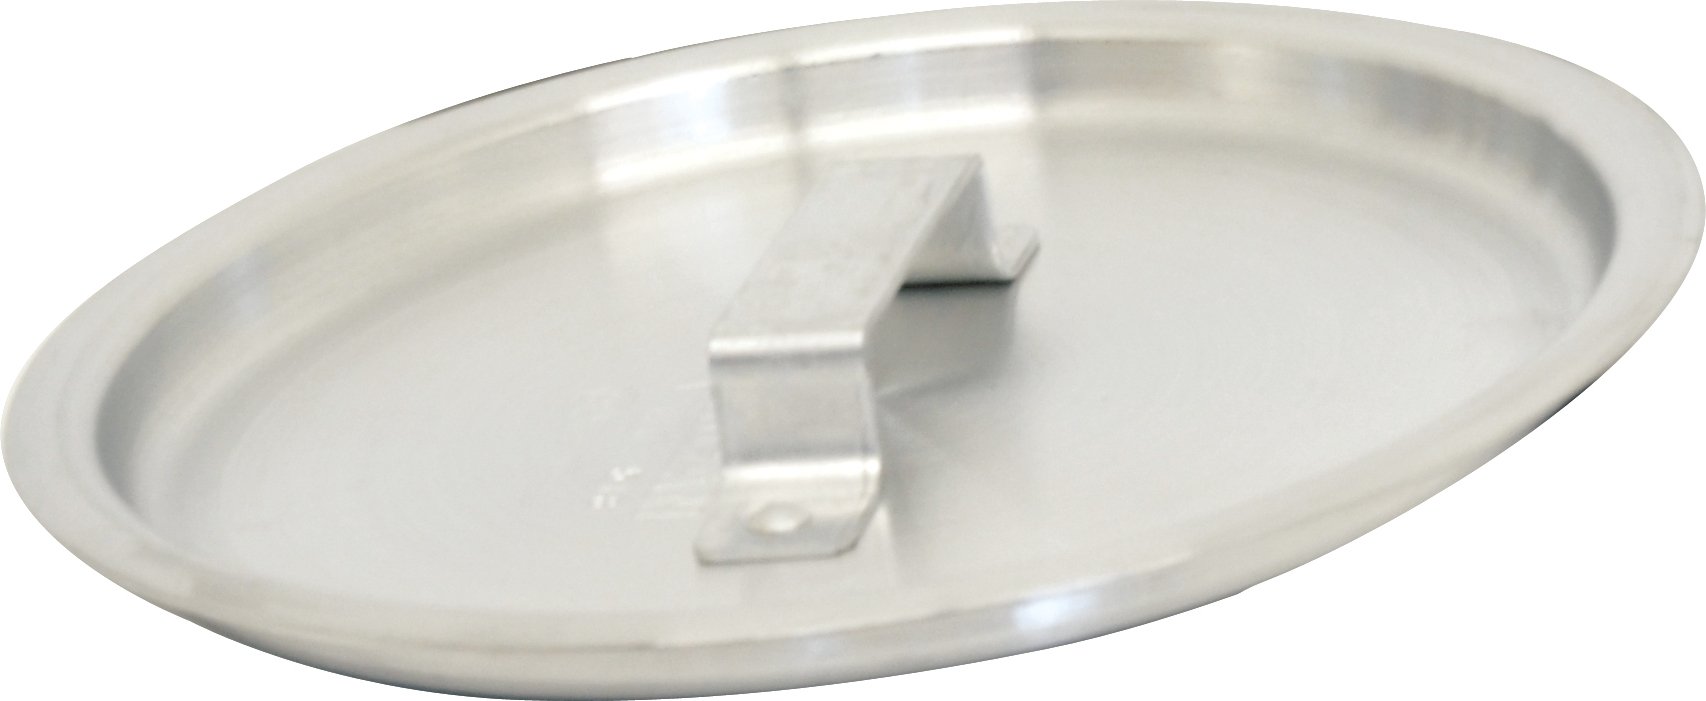 Omcan - Aluminum Cover For 12 QT Stock Pot (80465), 20/cs - 80464